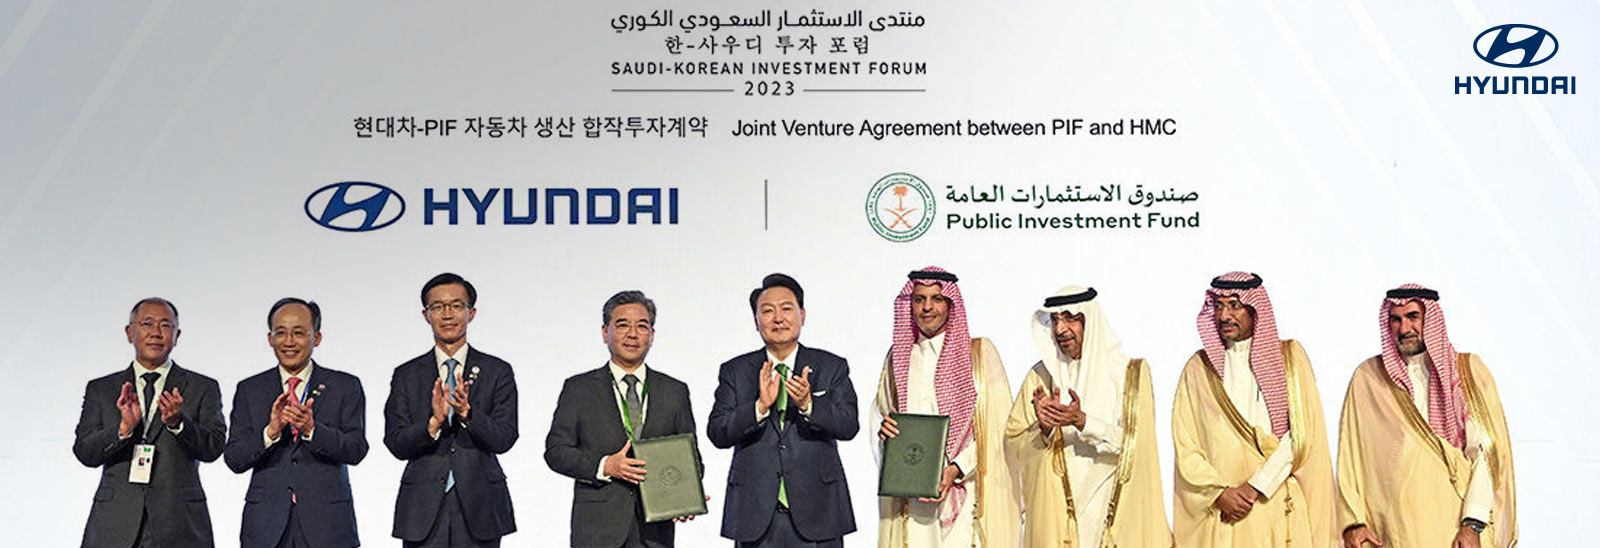 Ejecutvios de Hyundai Motor Company y el Fondo de Inversión Pública (PIF) en Arabia Saudita tras acuerdo en conjunto